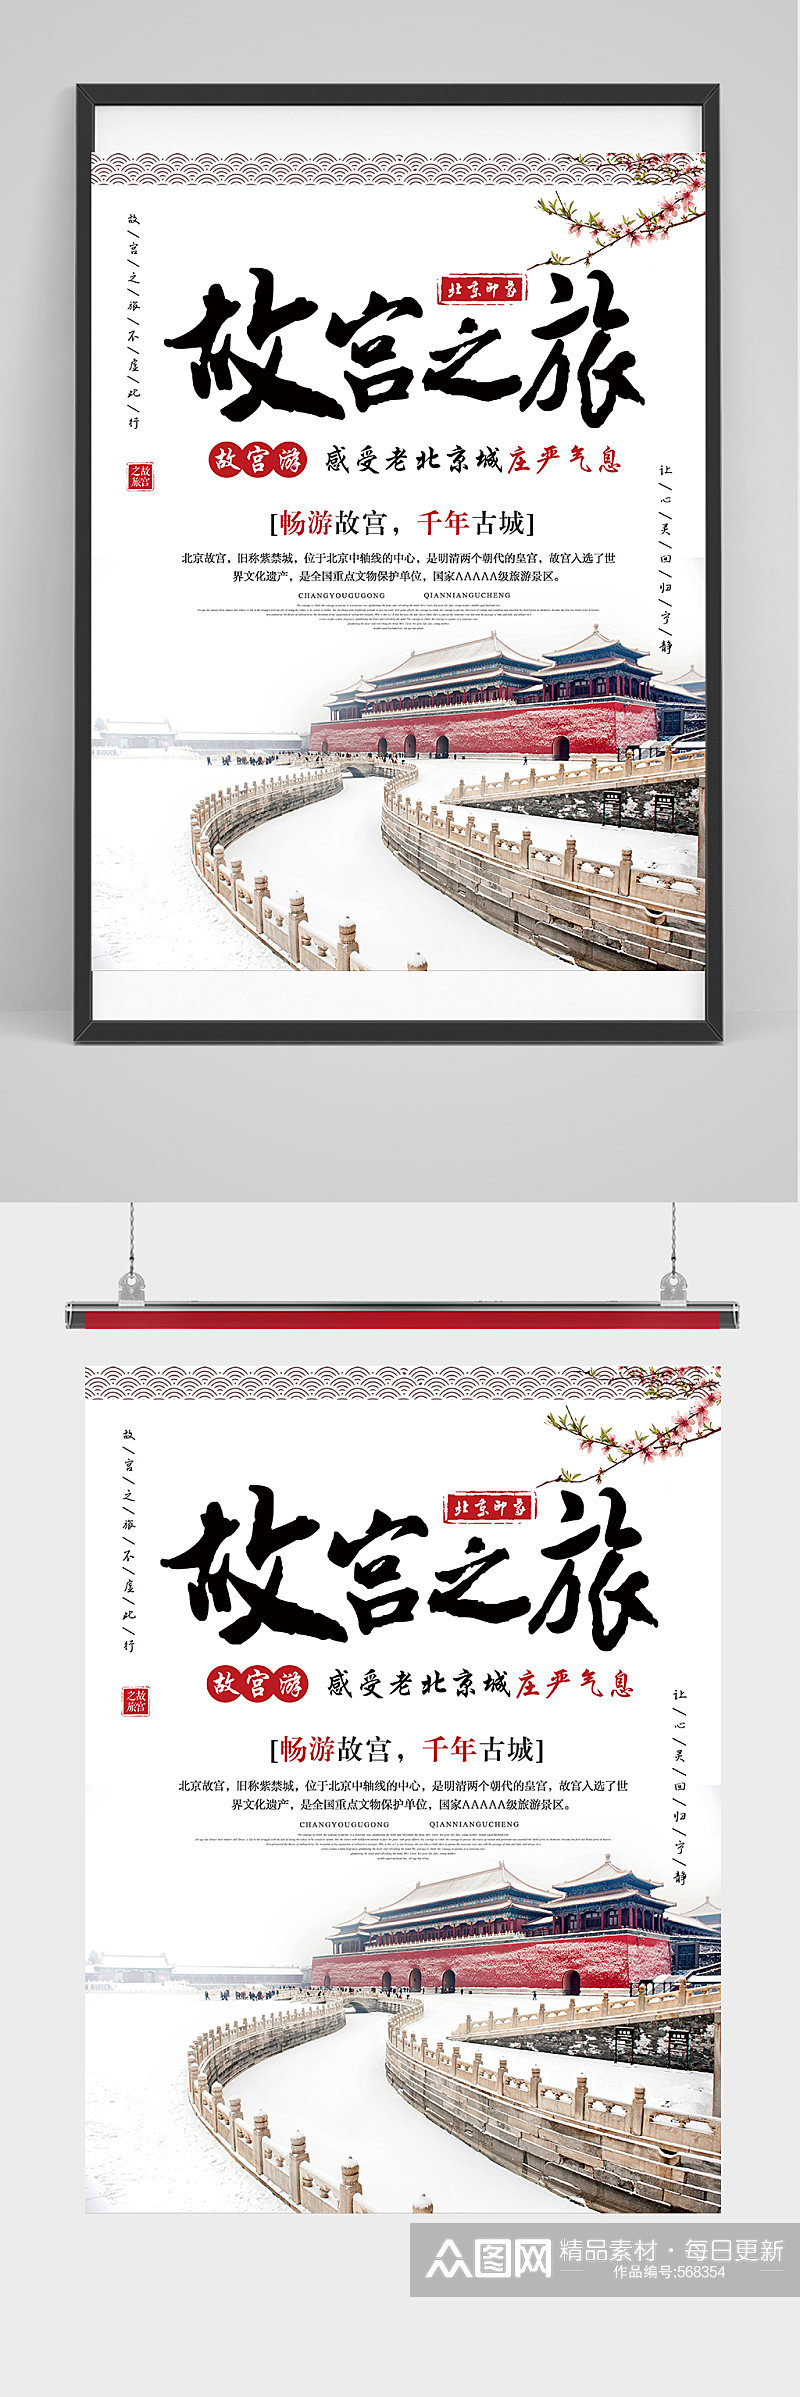 简约故宫之旅宣传海报素材